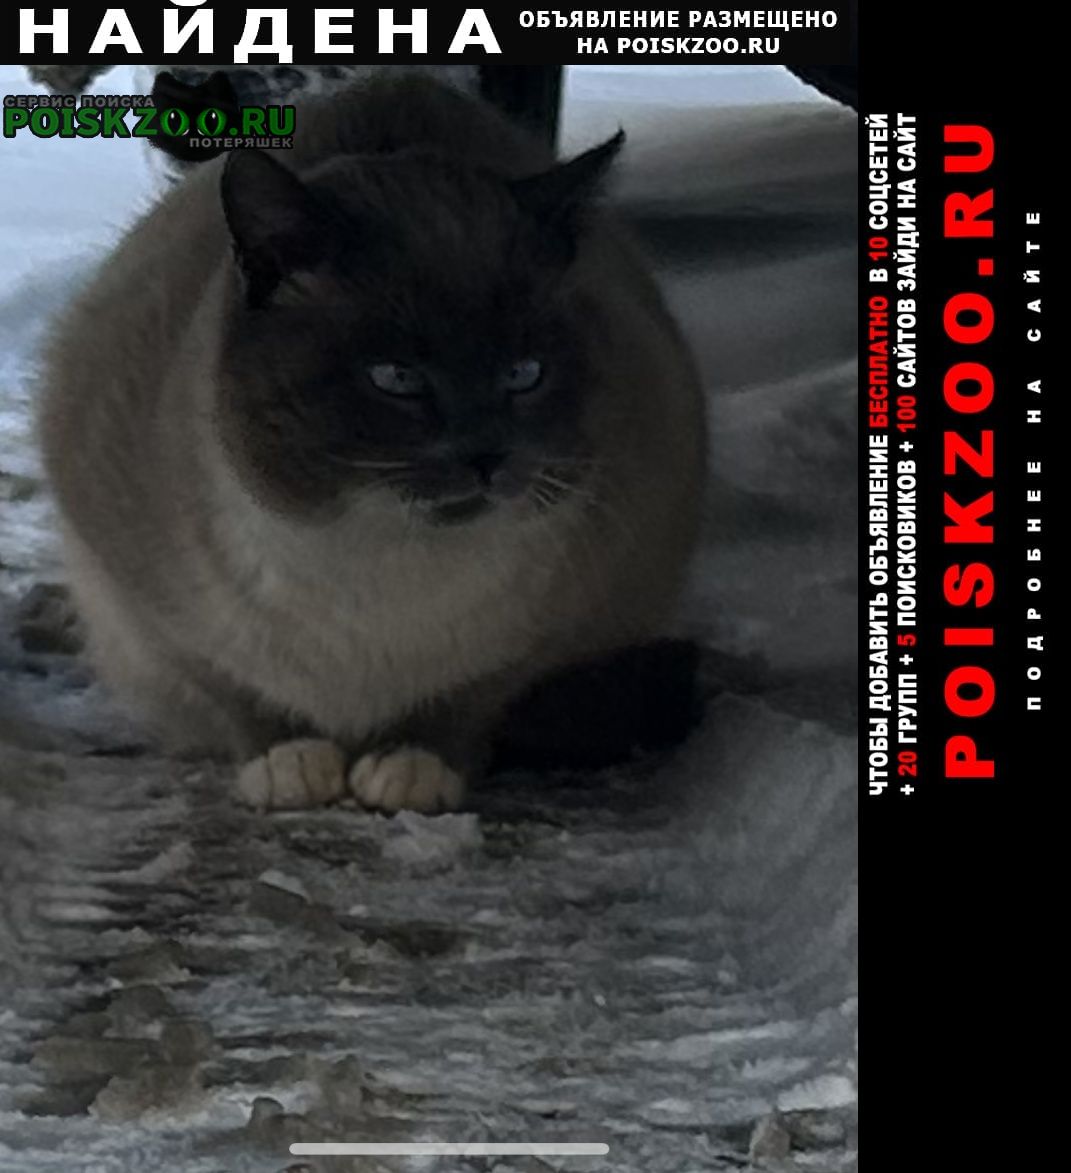 Найден кот д. лапино похож на сиамского Одинцово